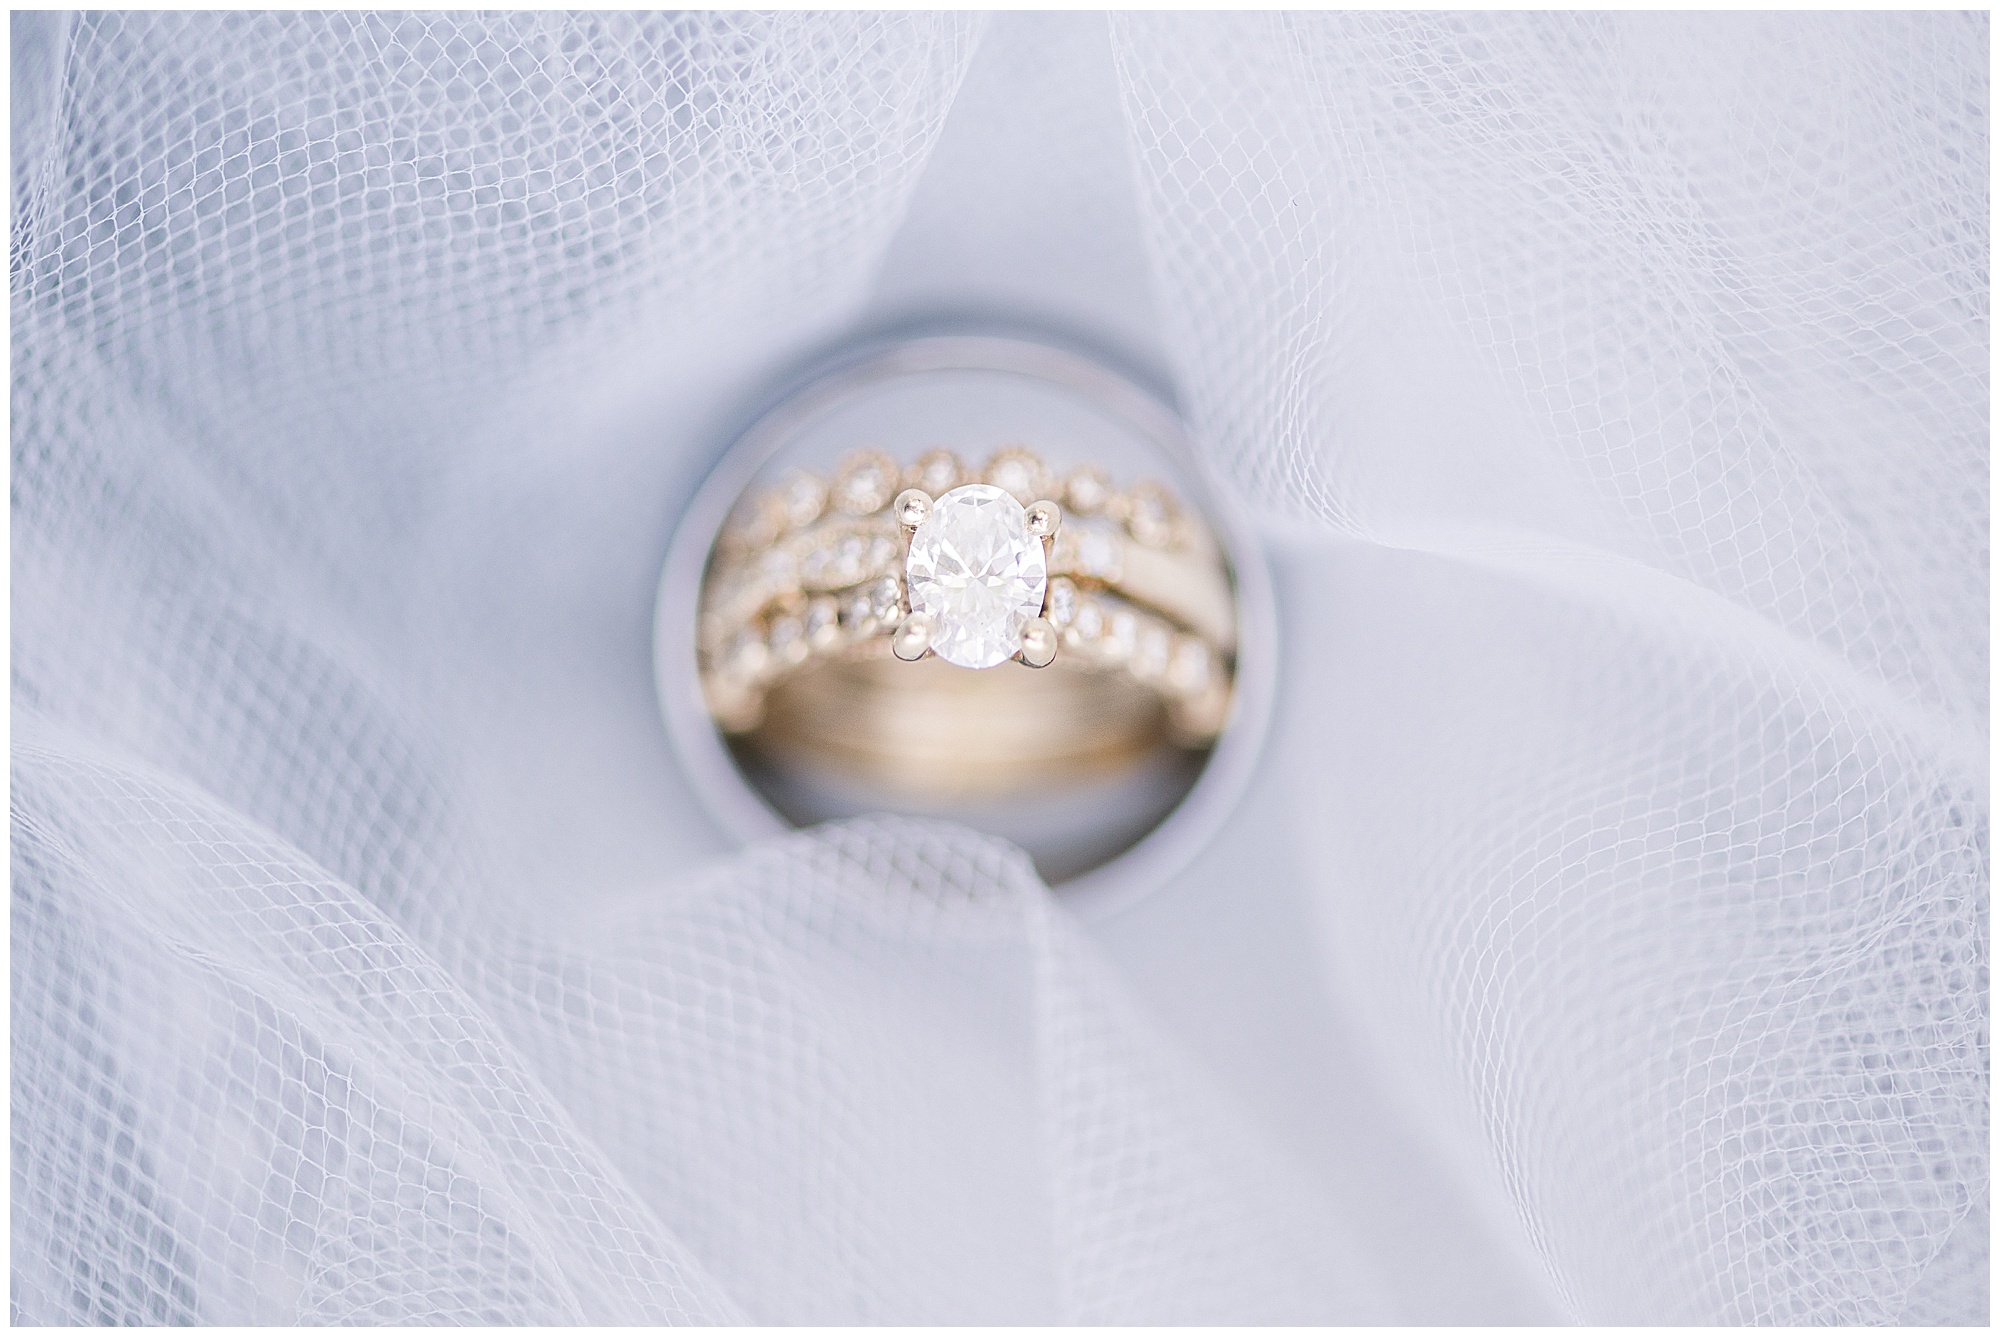 Engagement ring detail shot. 